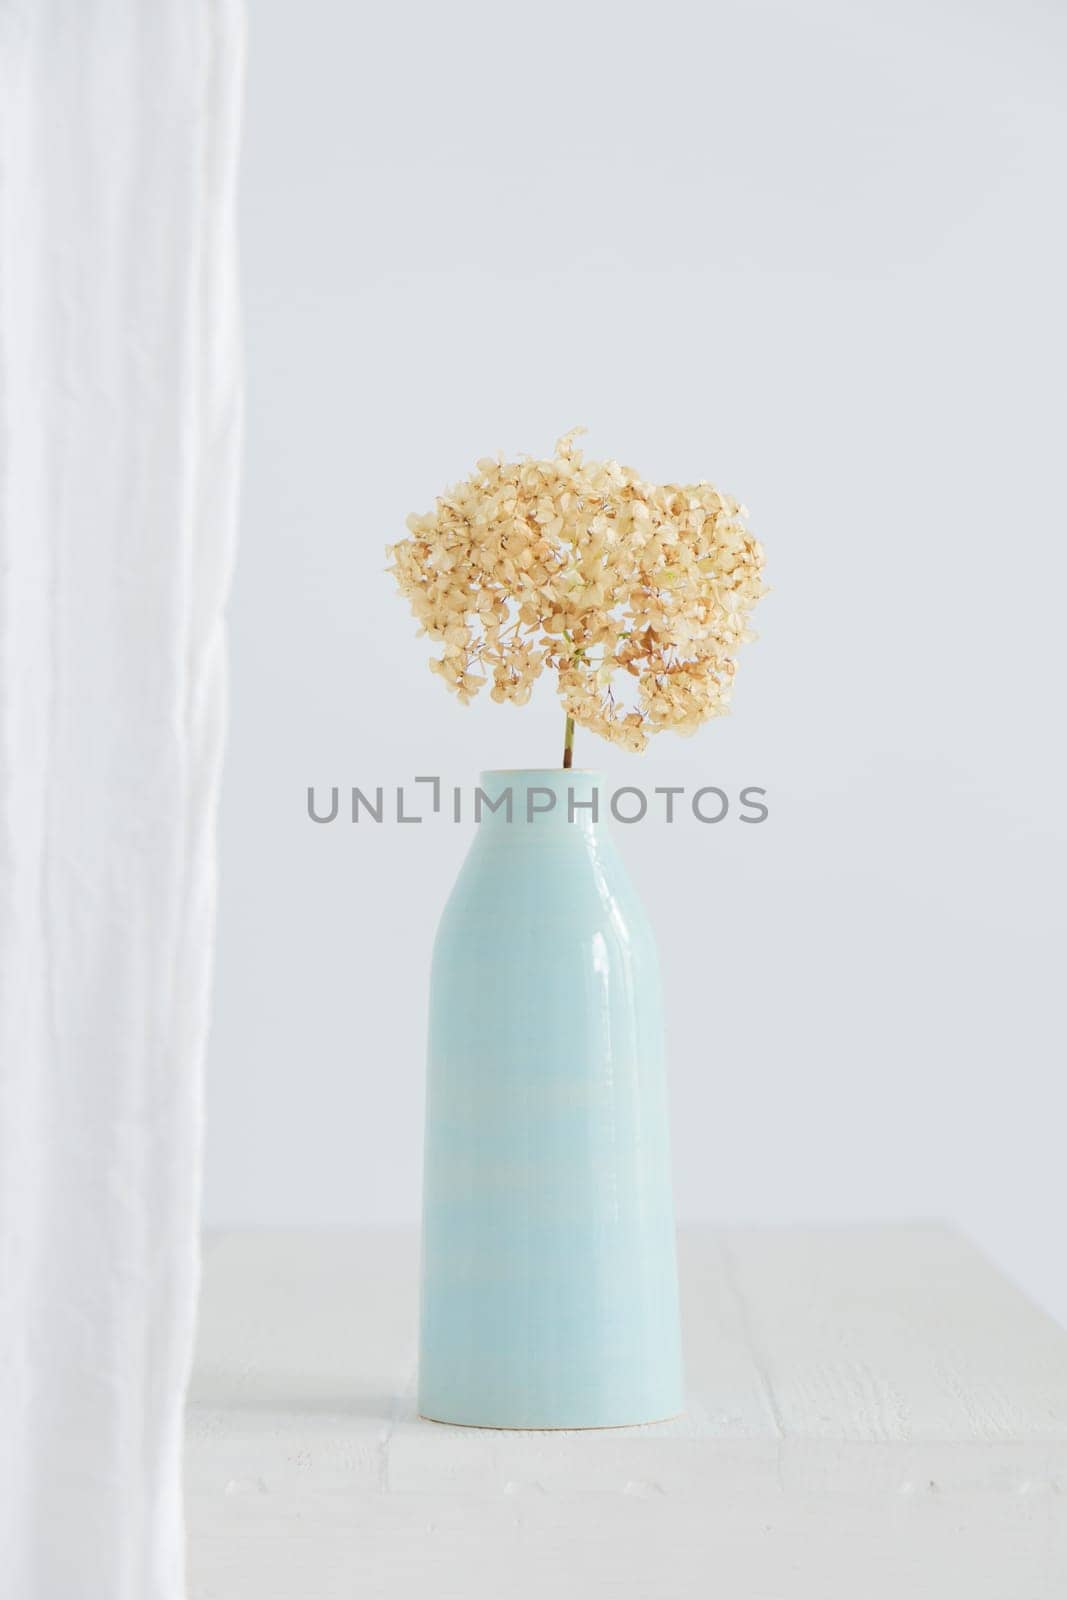 Dry hydrangea flower in blue vase on white interior. Minimalist stilllife banner